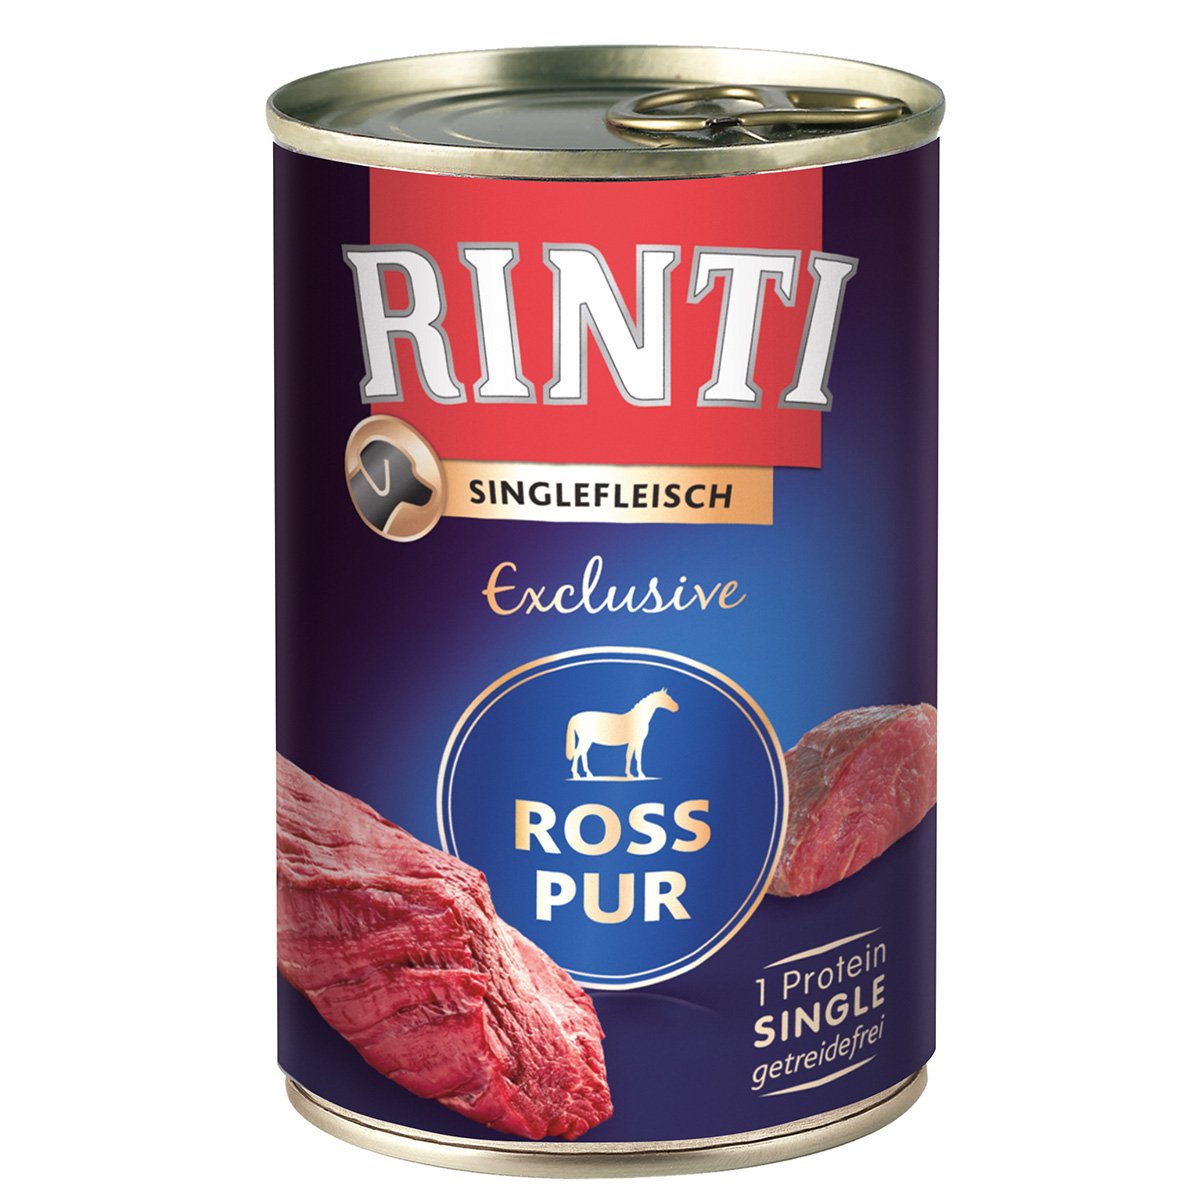 Rinti Singlefleisch Exclusive Ross pur 12x400g von Rinti